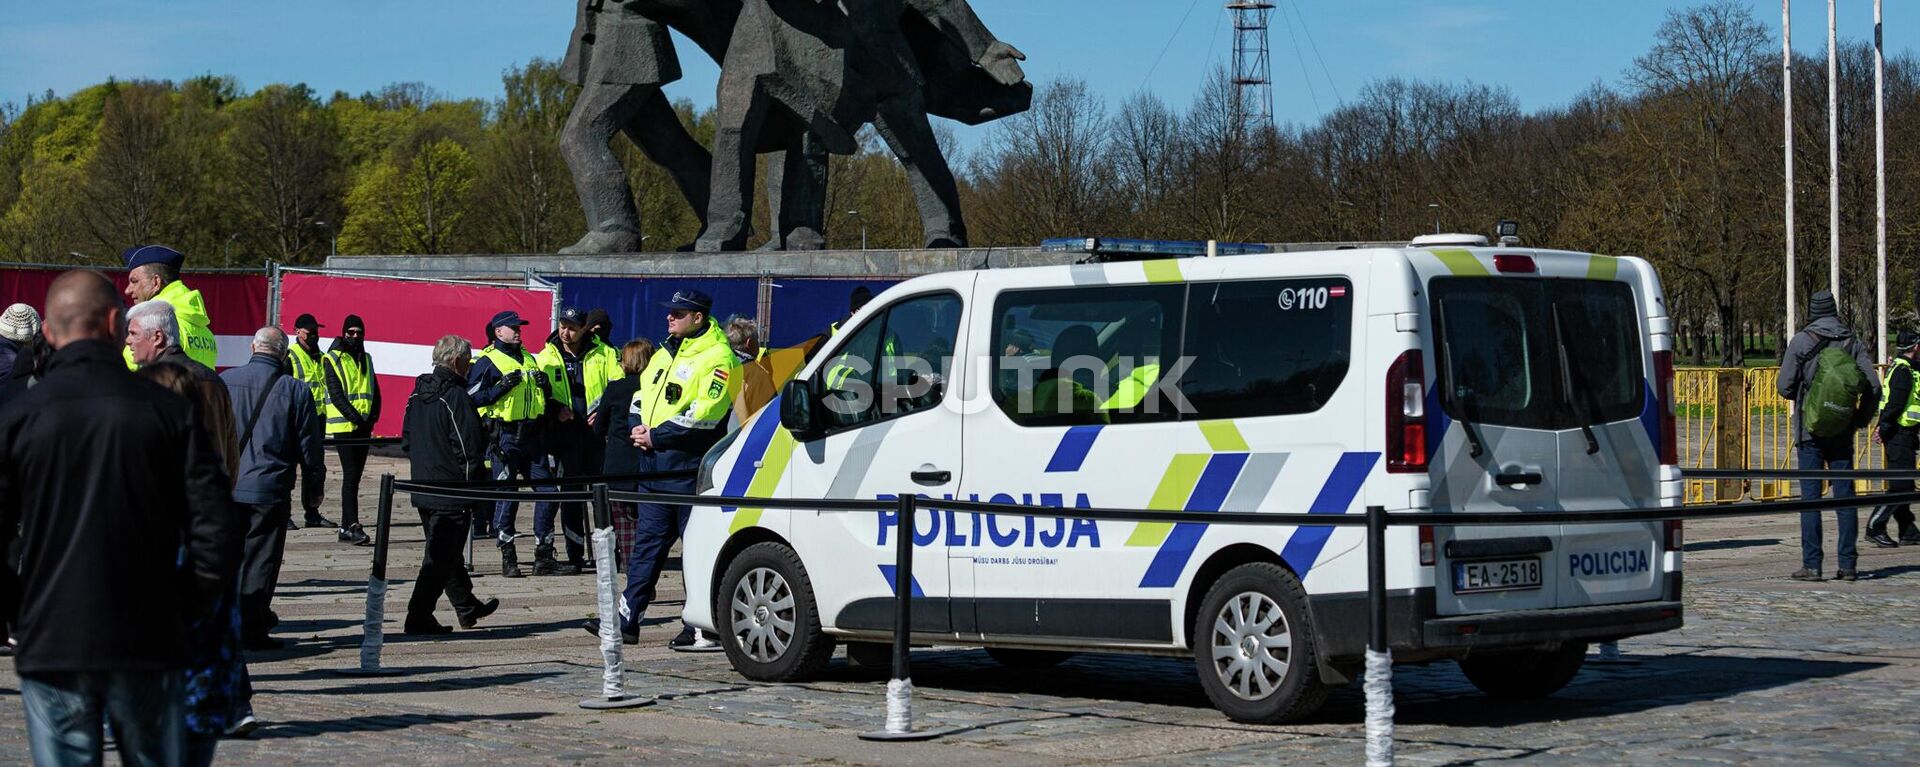 Полиция возле памятника Освободителям Риги, 9 Мая 2022 года - Sputnik Латвия, 1920, 09.05.2022